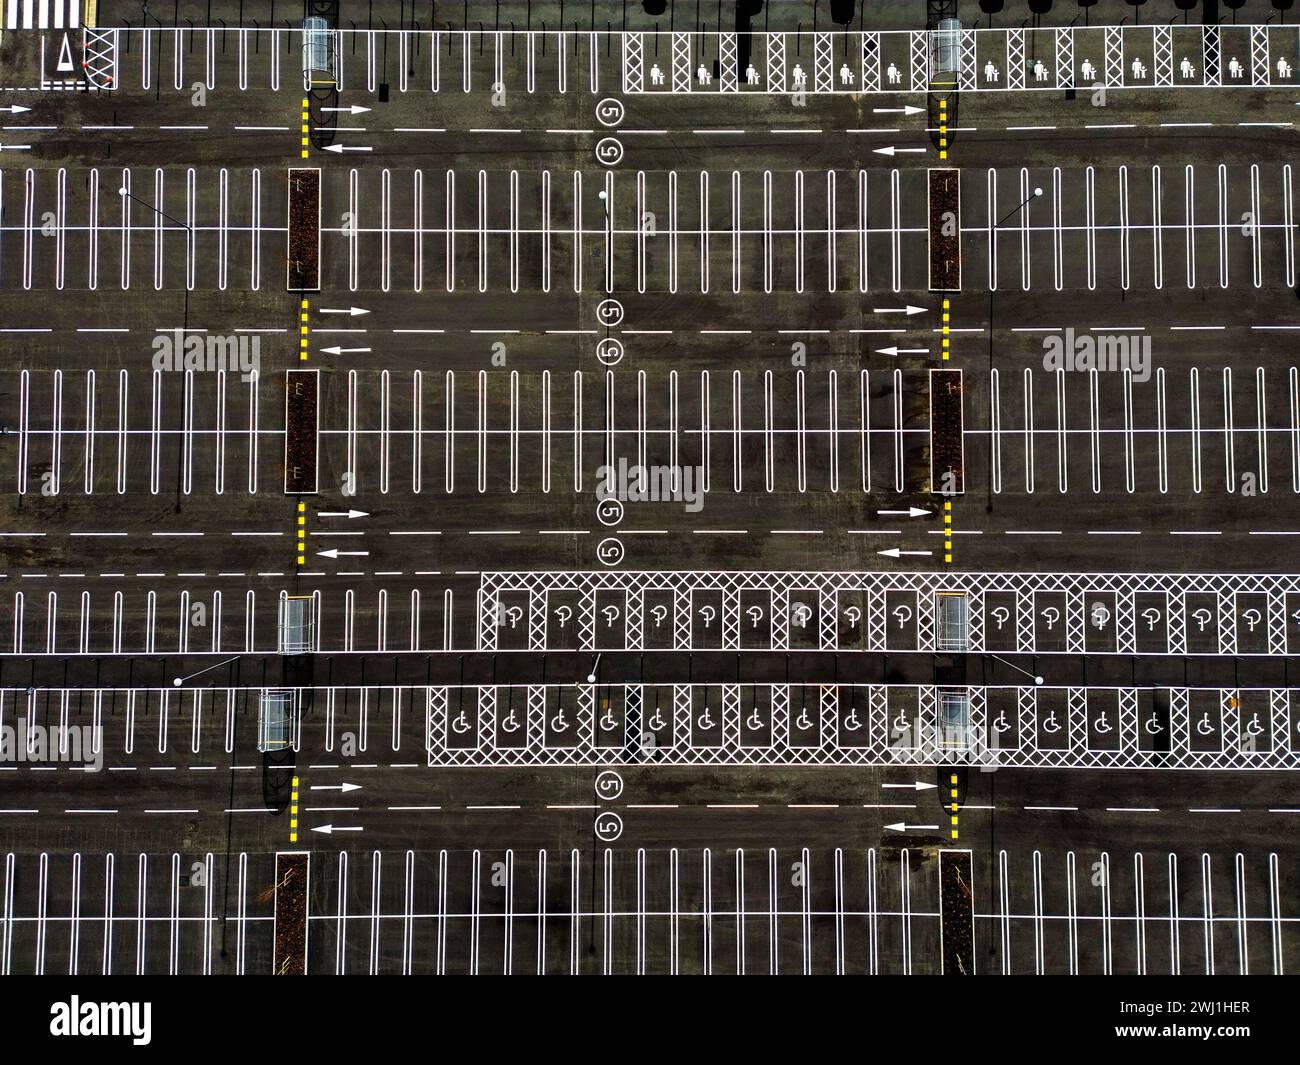 Vue aérienne d'un parking nouvellement balisé avec baies pour parking familial et parking handicapés Banque D'Images